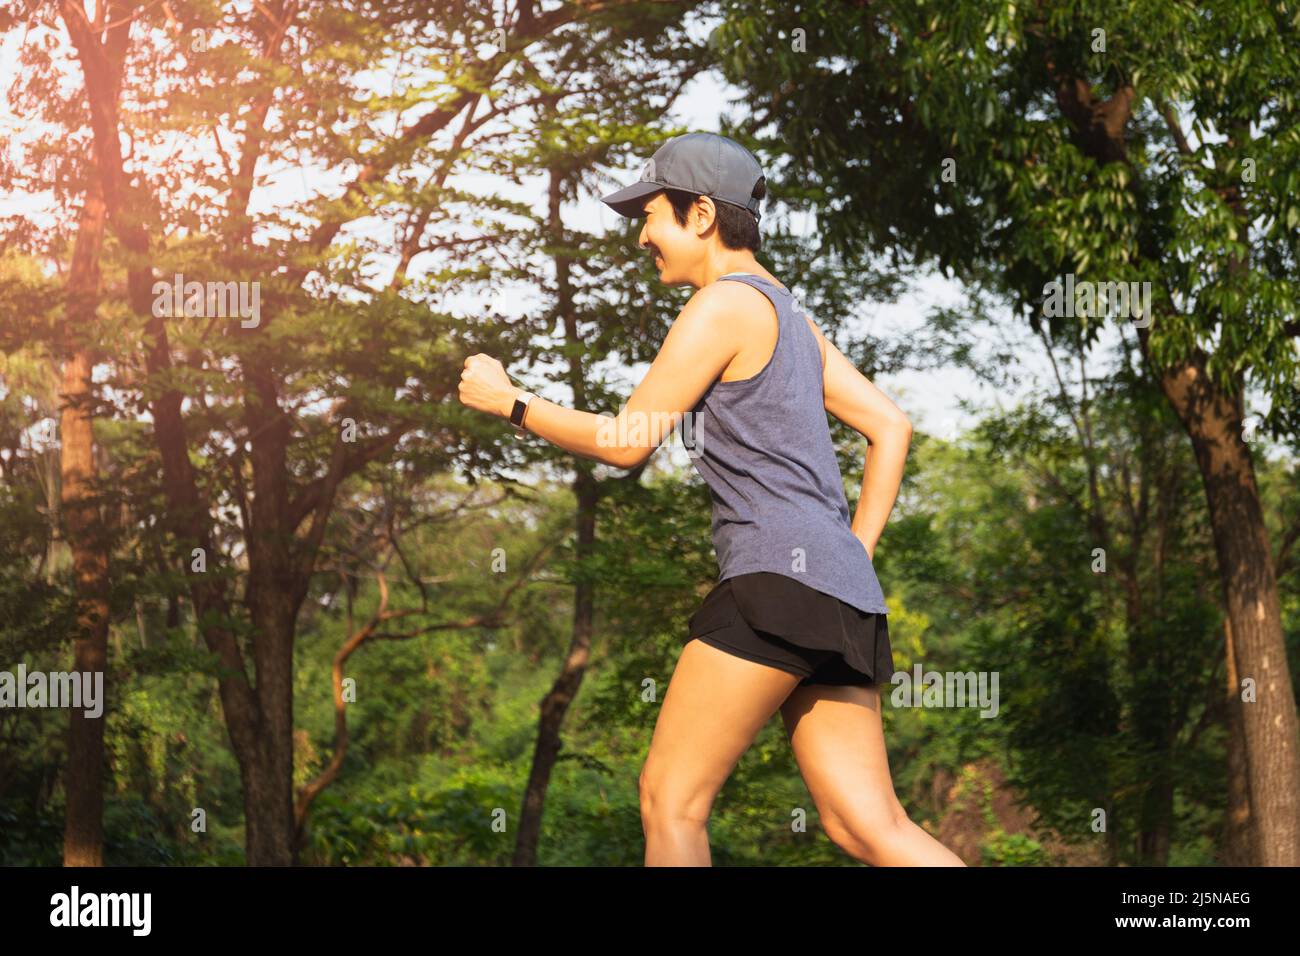 Glückliche asiatische Frau Übung Wandern im öffentlichen Park Workout-Konzept. Stockfoto